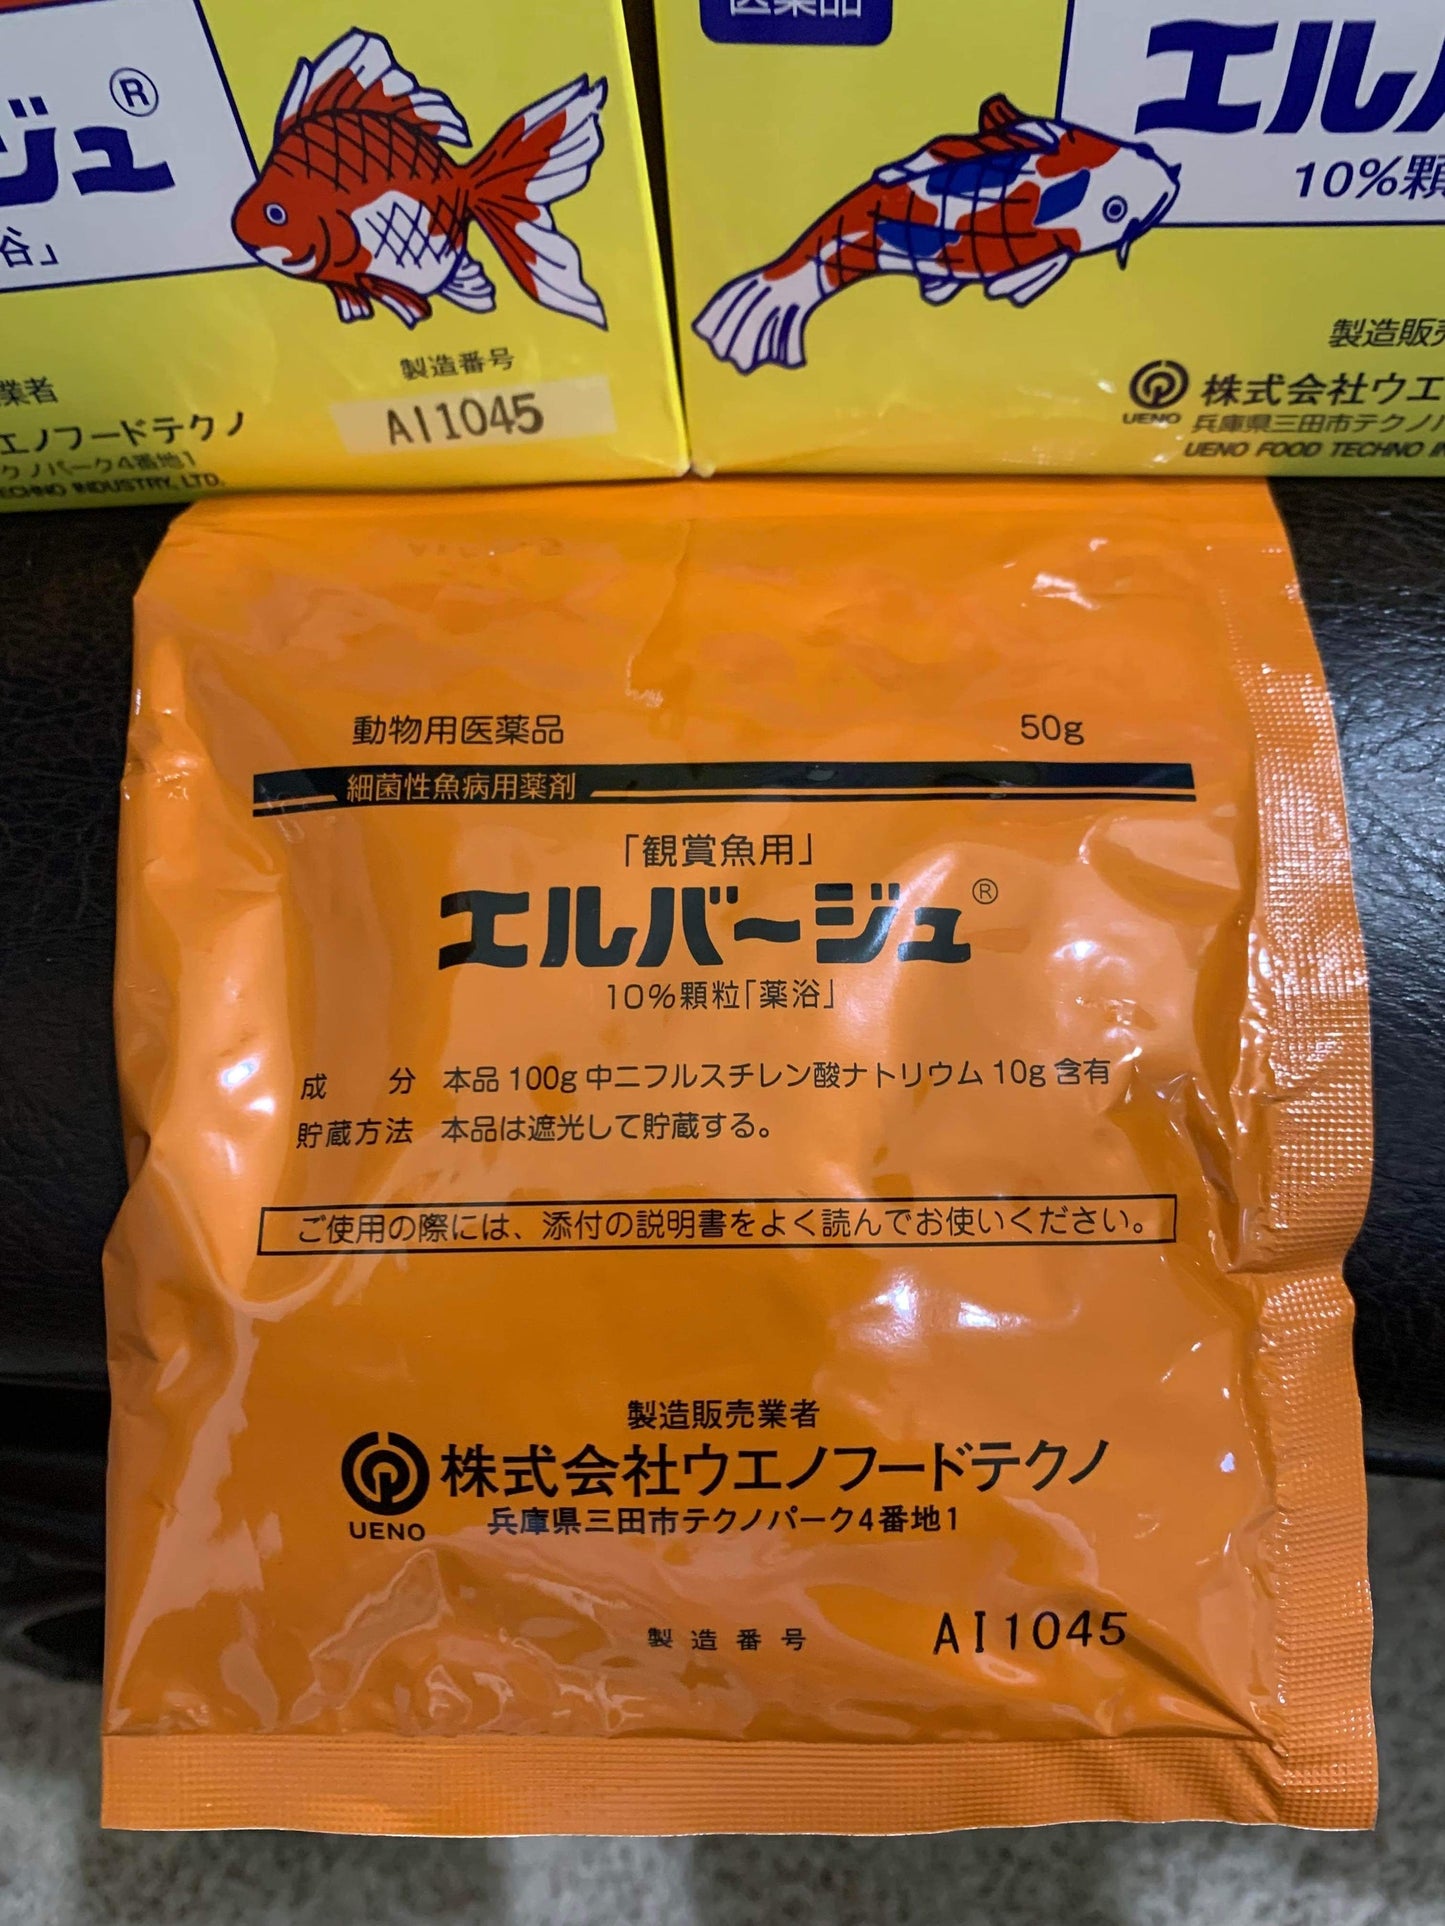 FREE SHIPPING Set of 5 Elbagin Powder 50g ( Yellow Powder ) Japanese Tetra